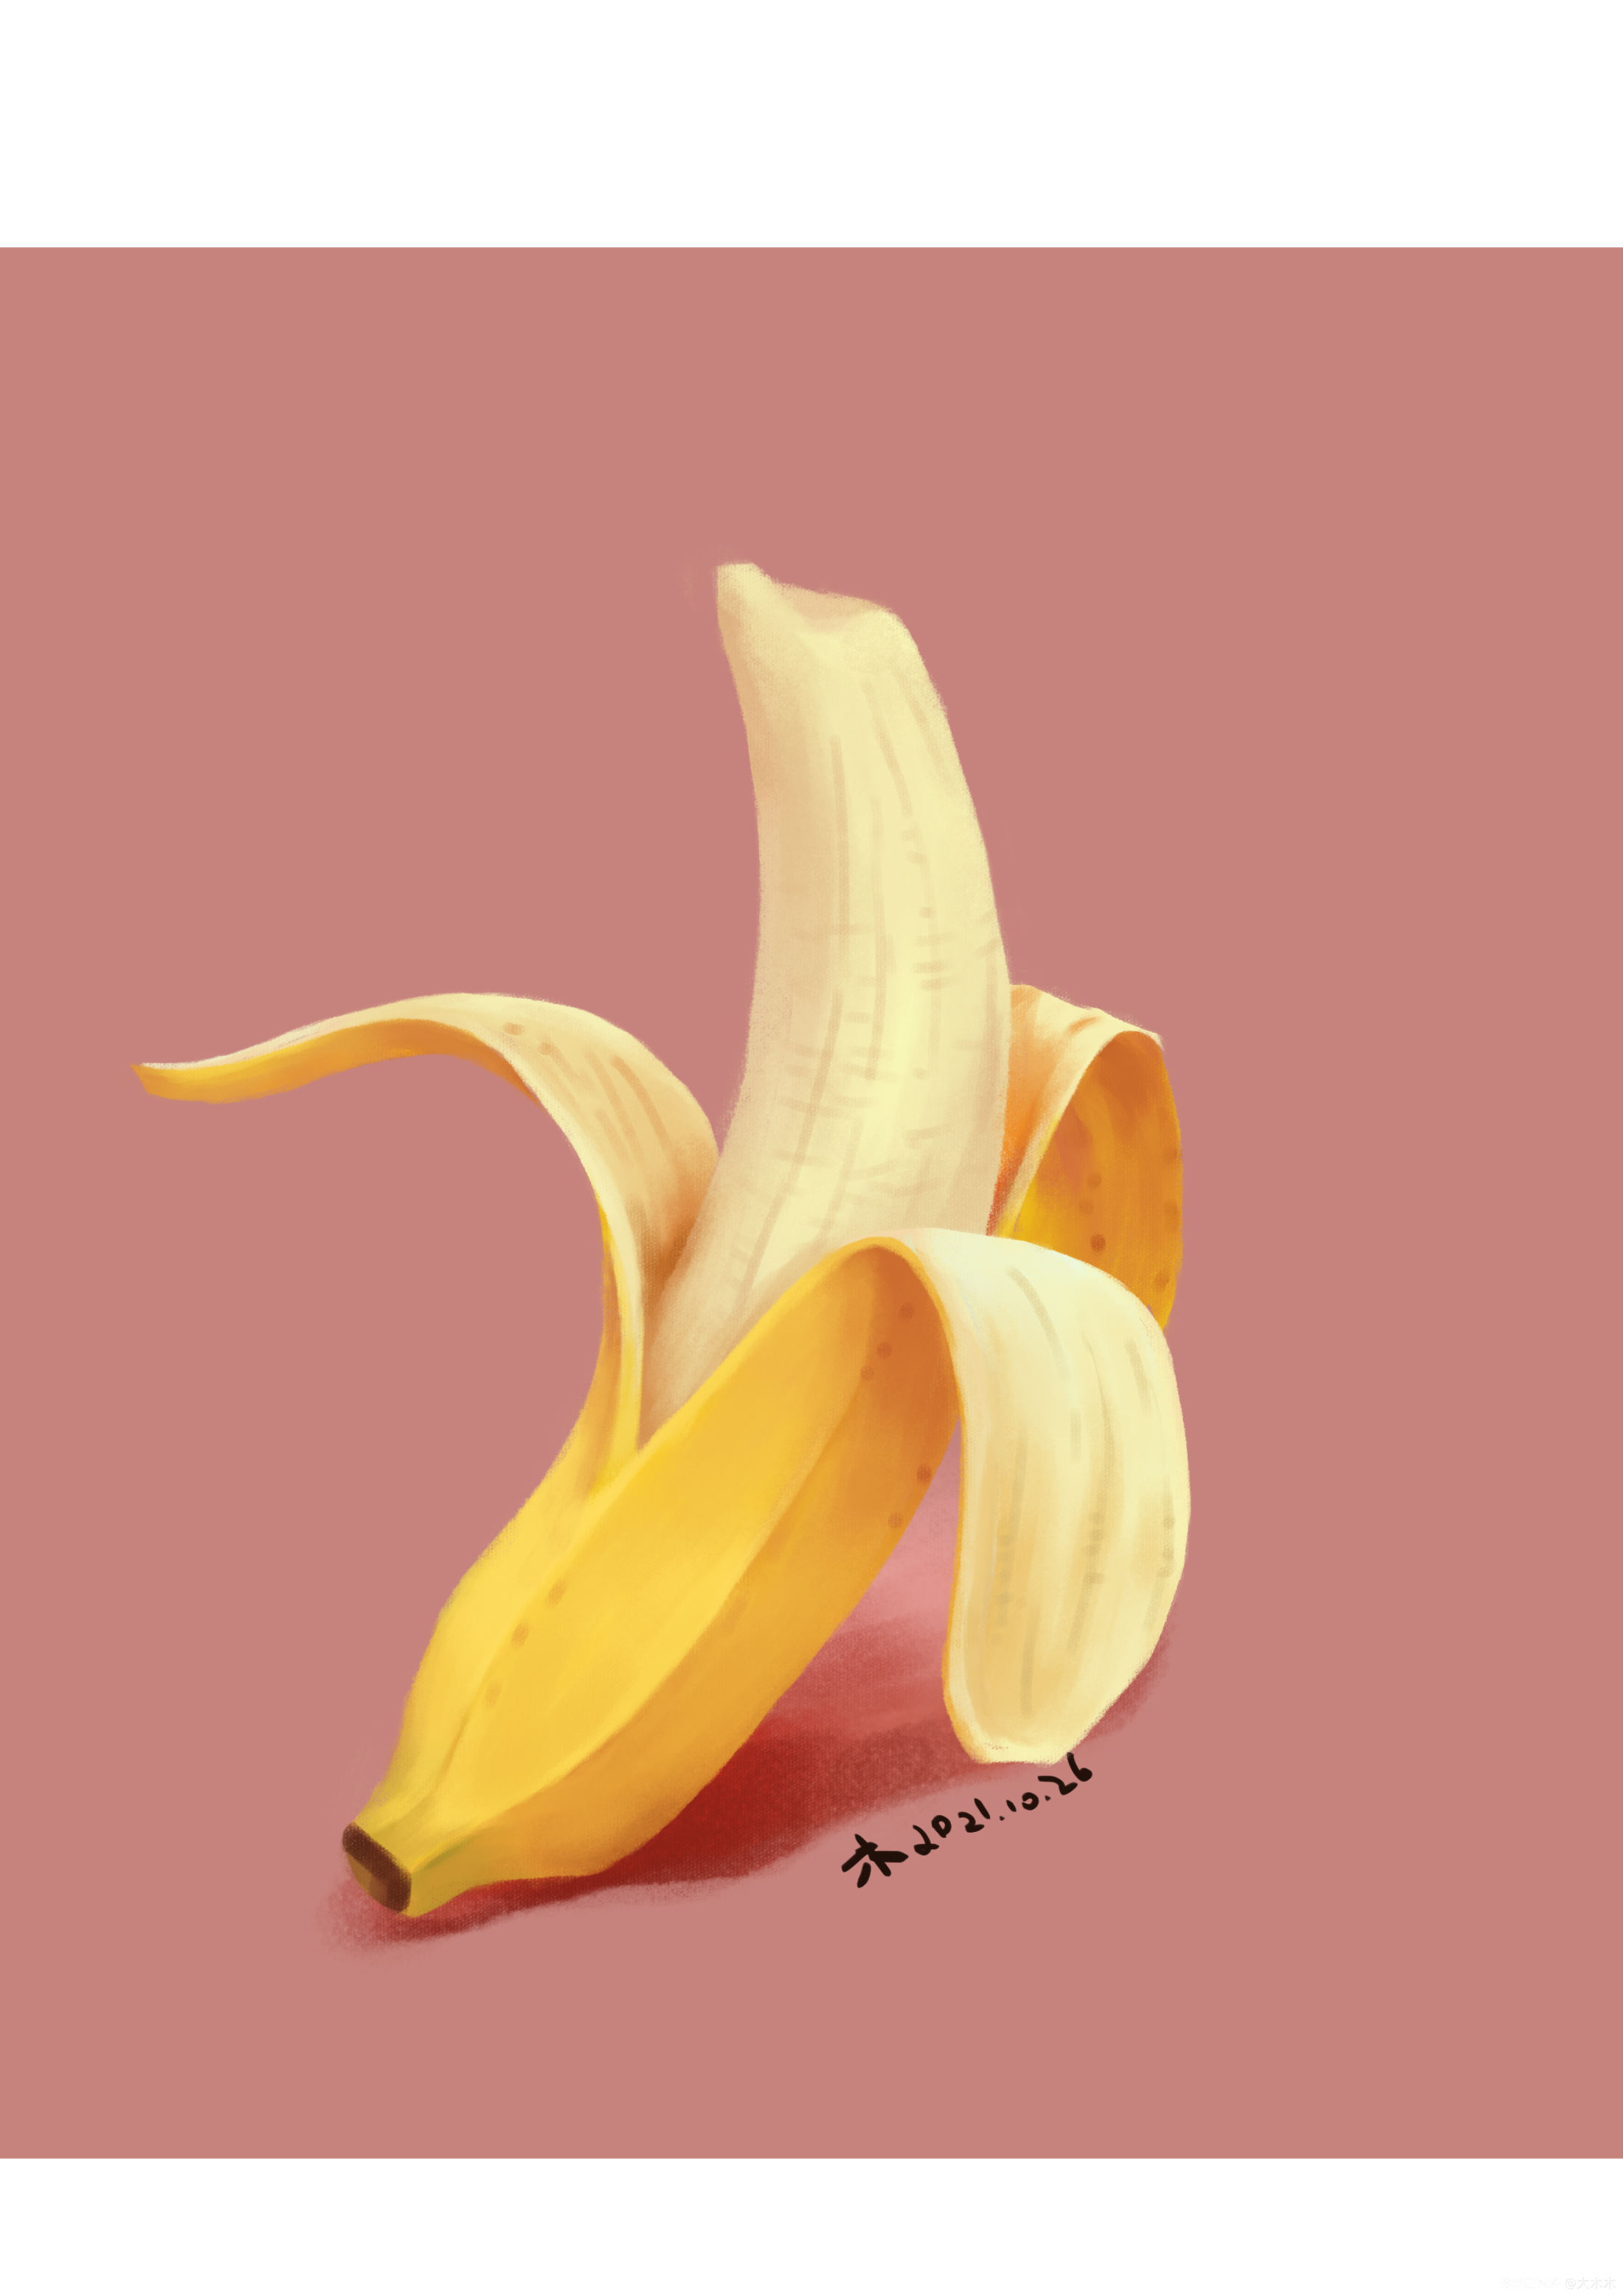 法中新闻:法国人巧用香蕉：关于香蕉皮你不得不知的12个小秘密